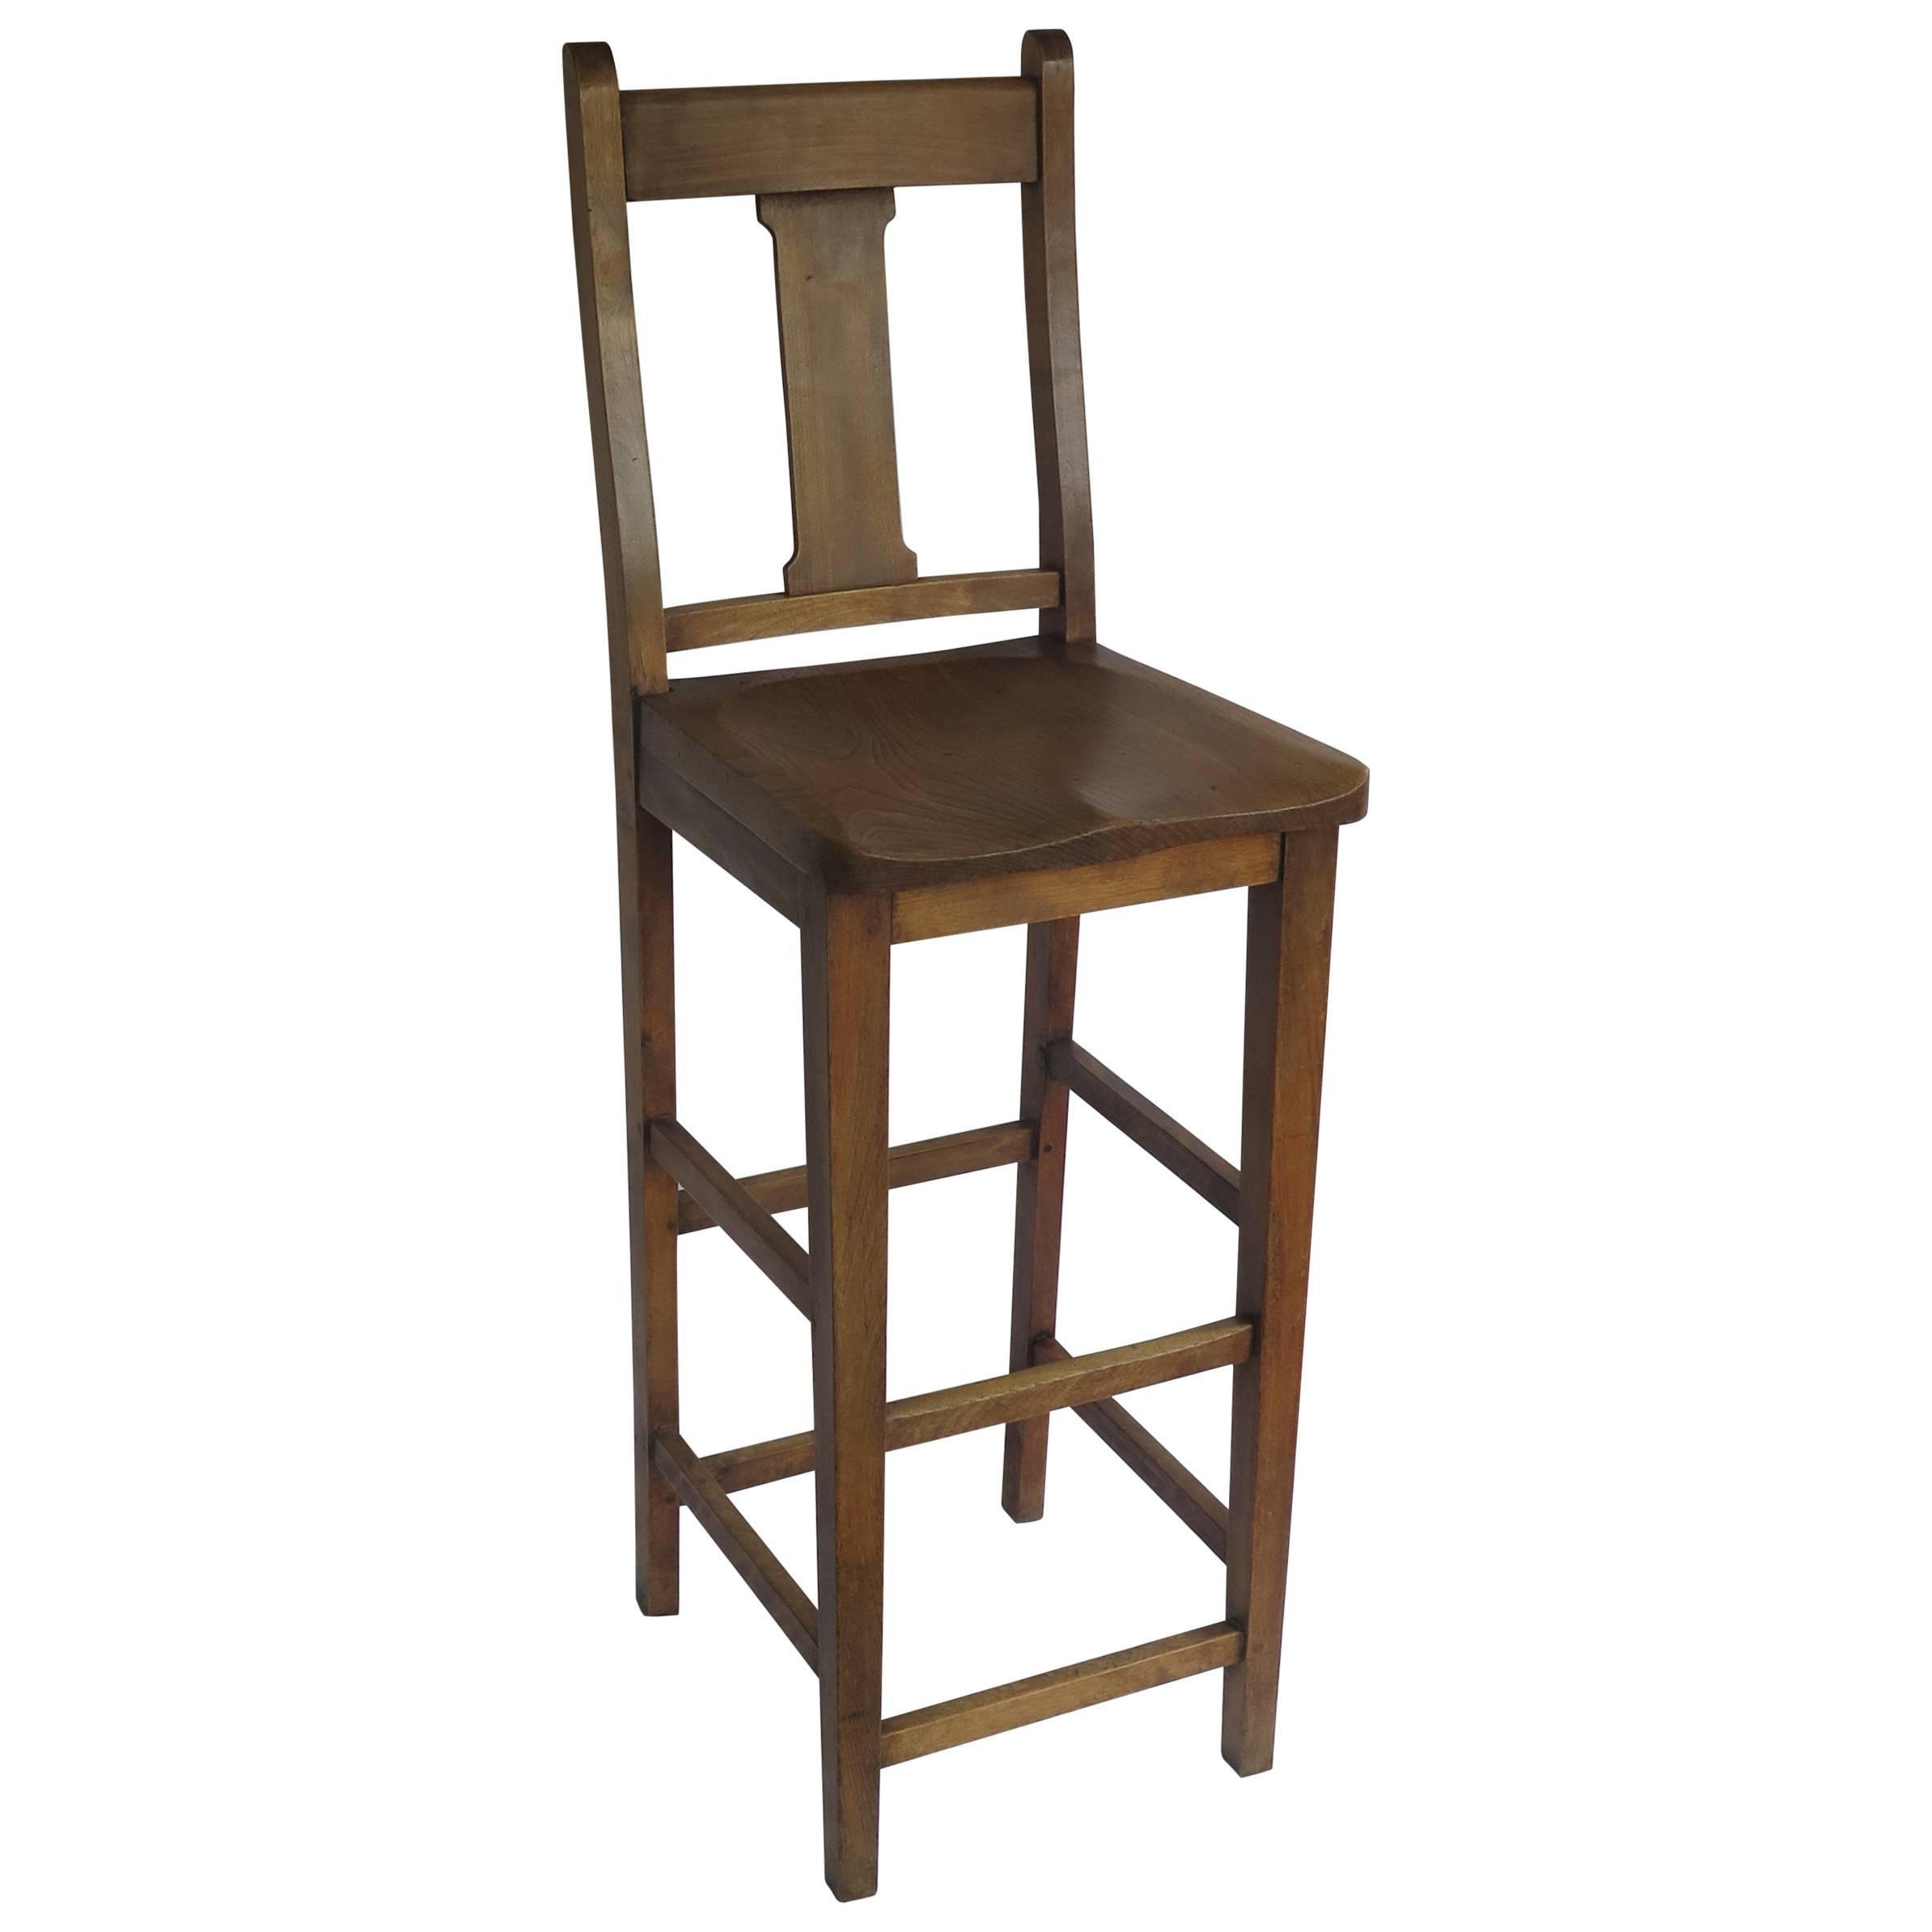 Chaise haute ou chaise de cuisine victorienne de Clérk en orme et plage, anglaise vers 1880